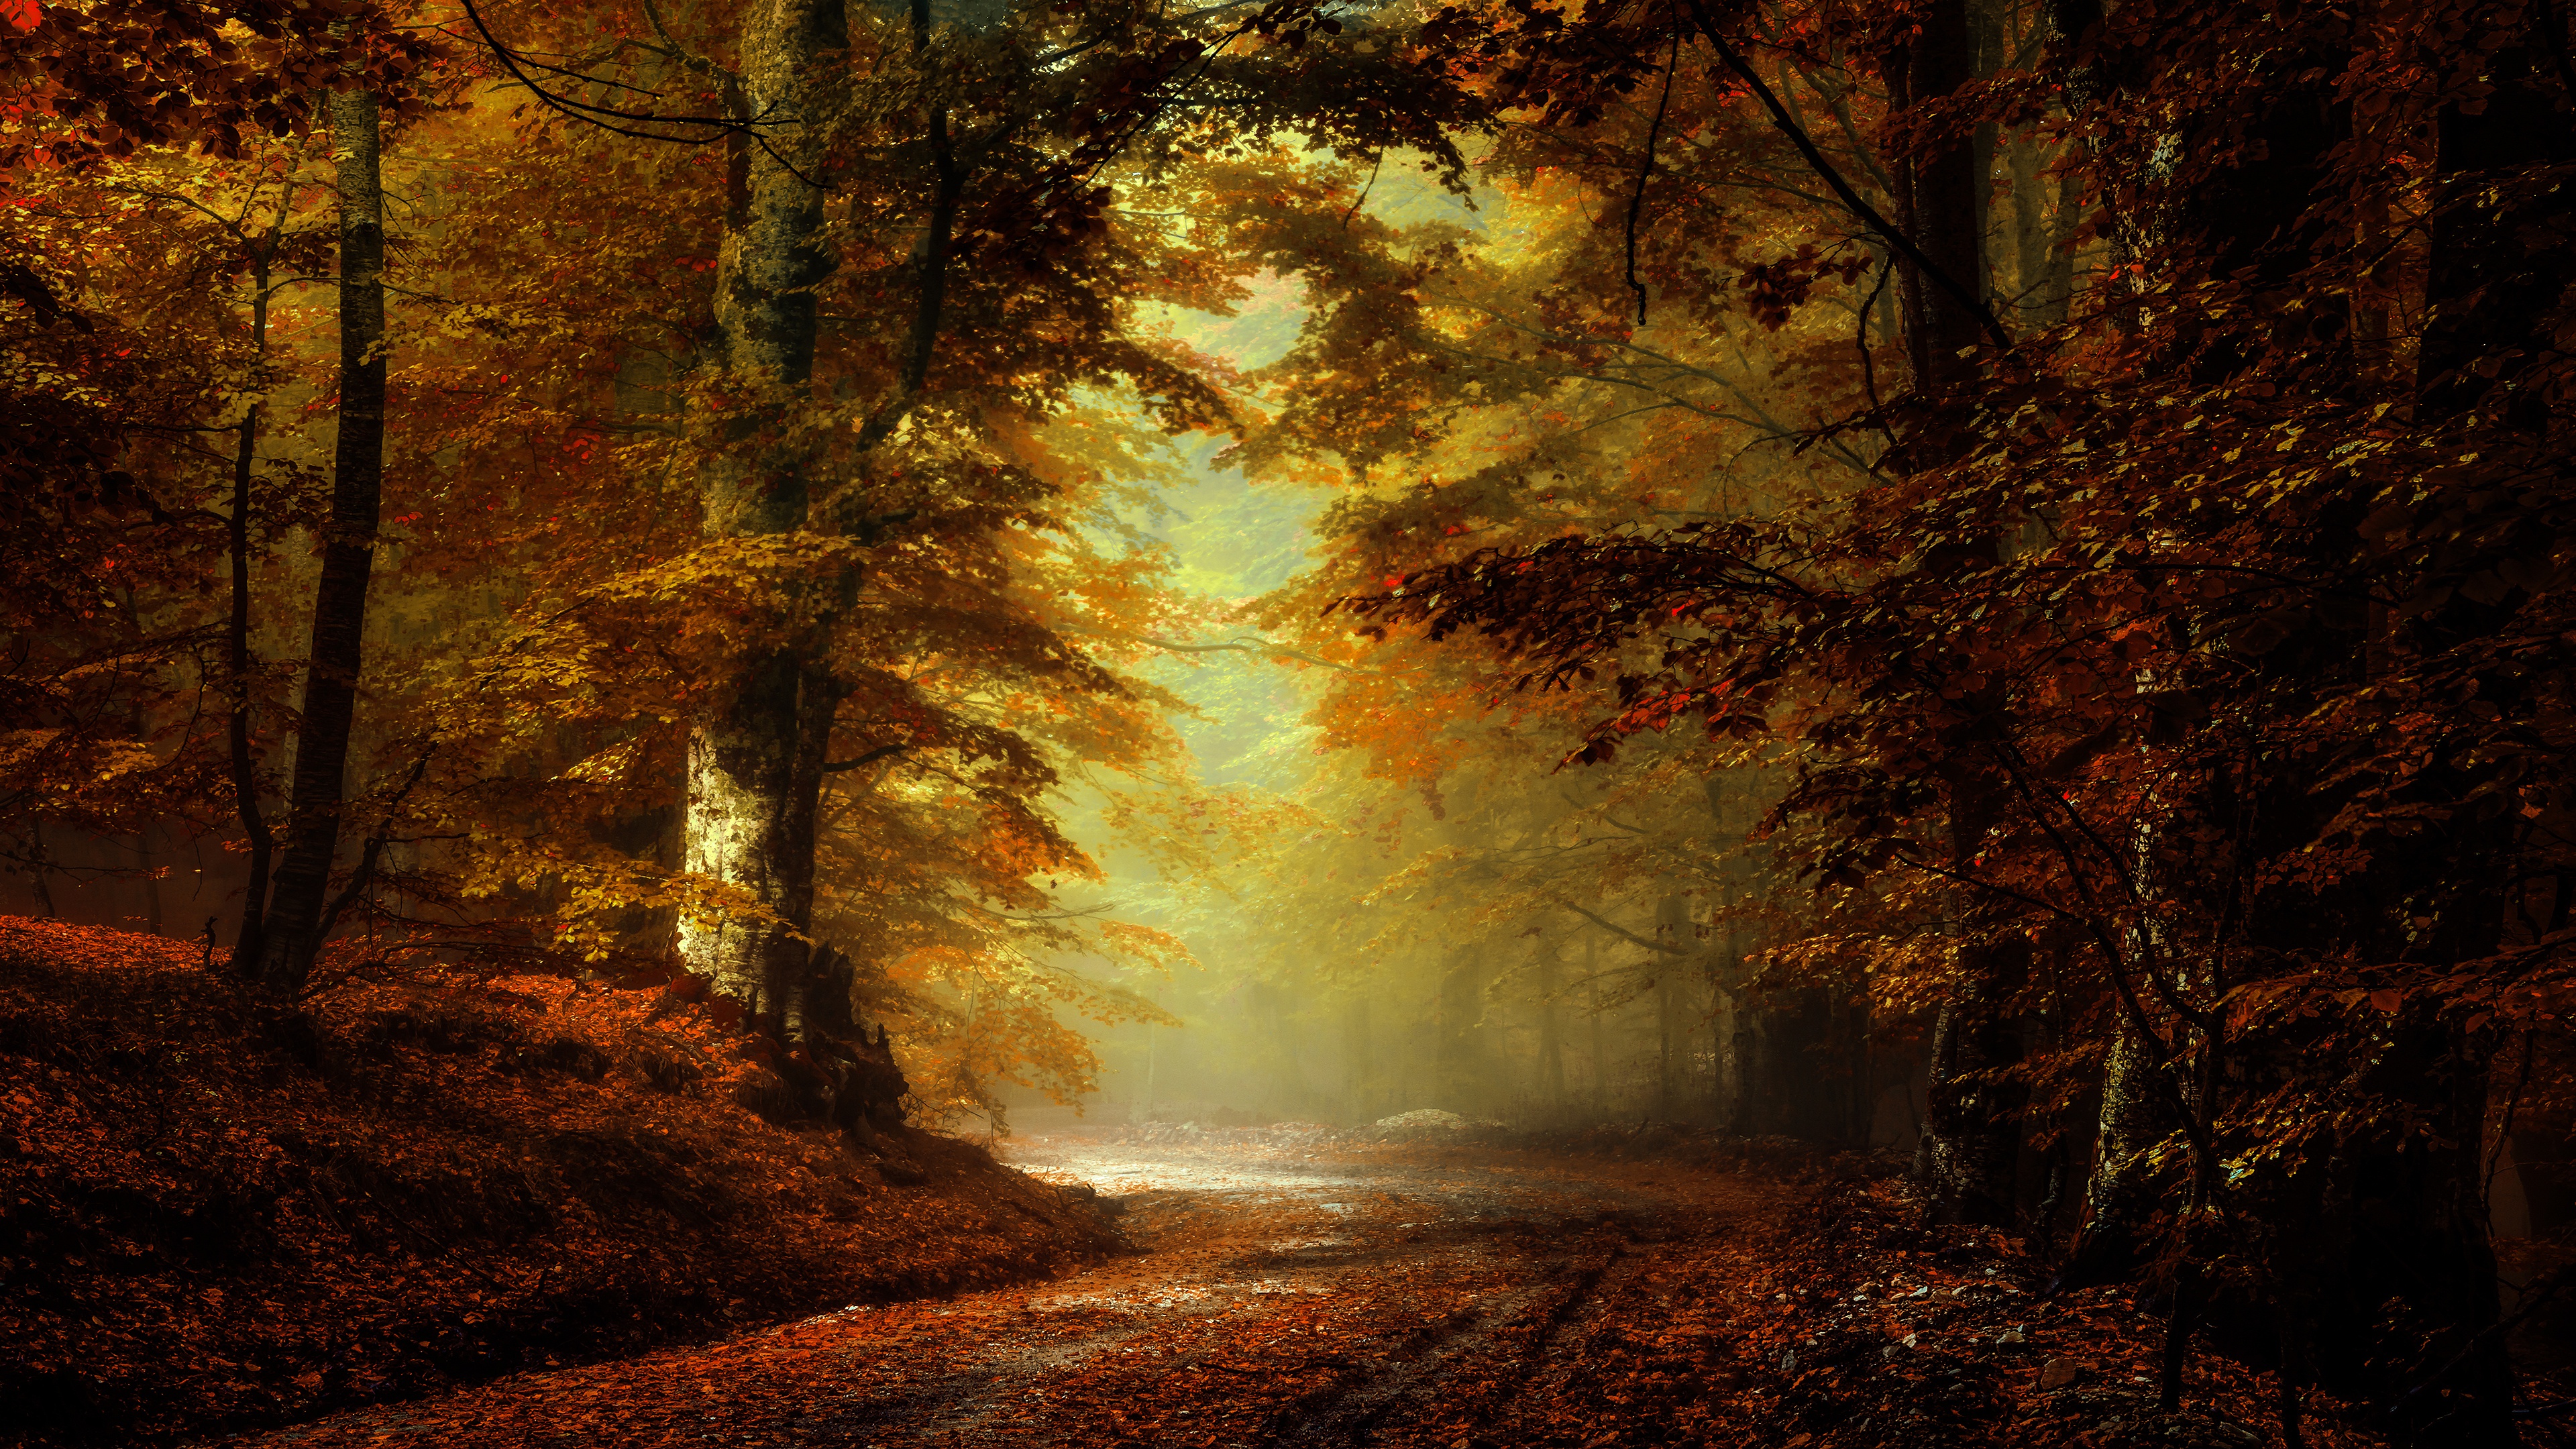 Скачать обои бесплатно Природа, Осень, Дорога, Лес, Парк, Дорожка, Земля/природа картинка на рабочий стол ПК